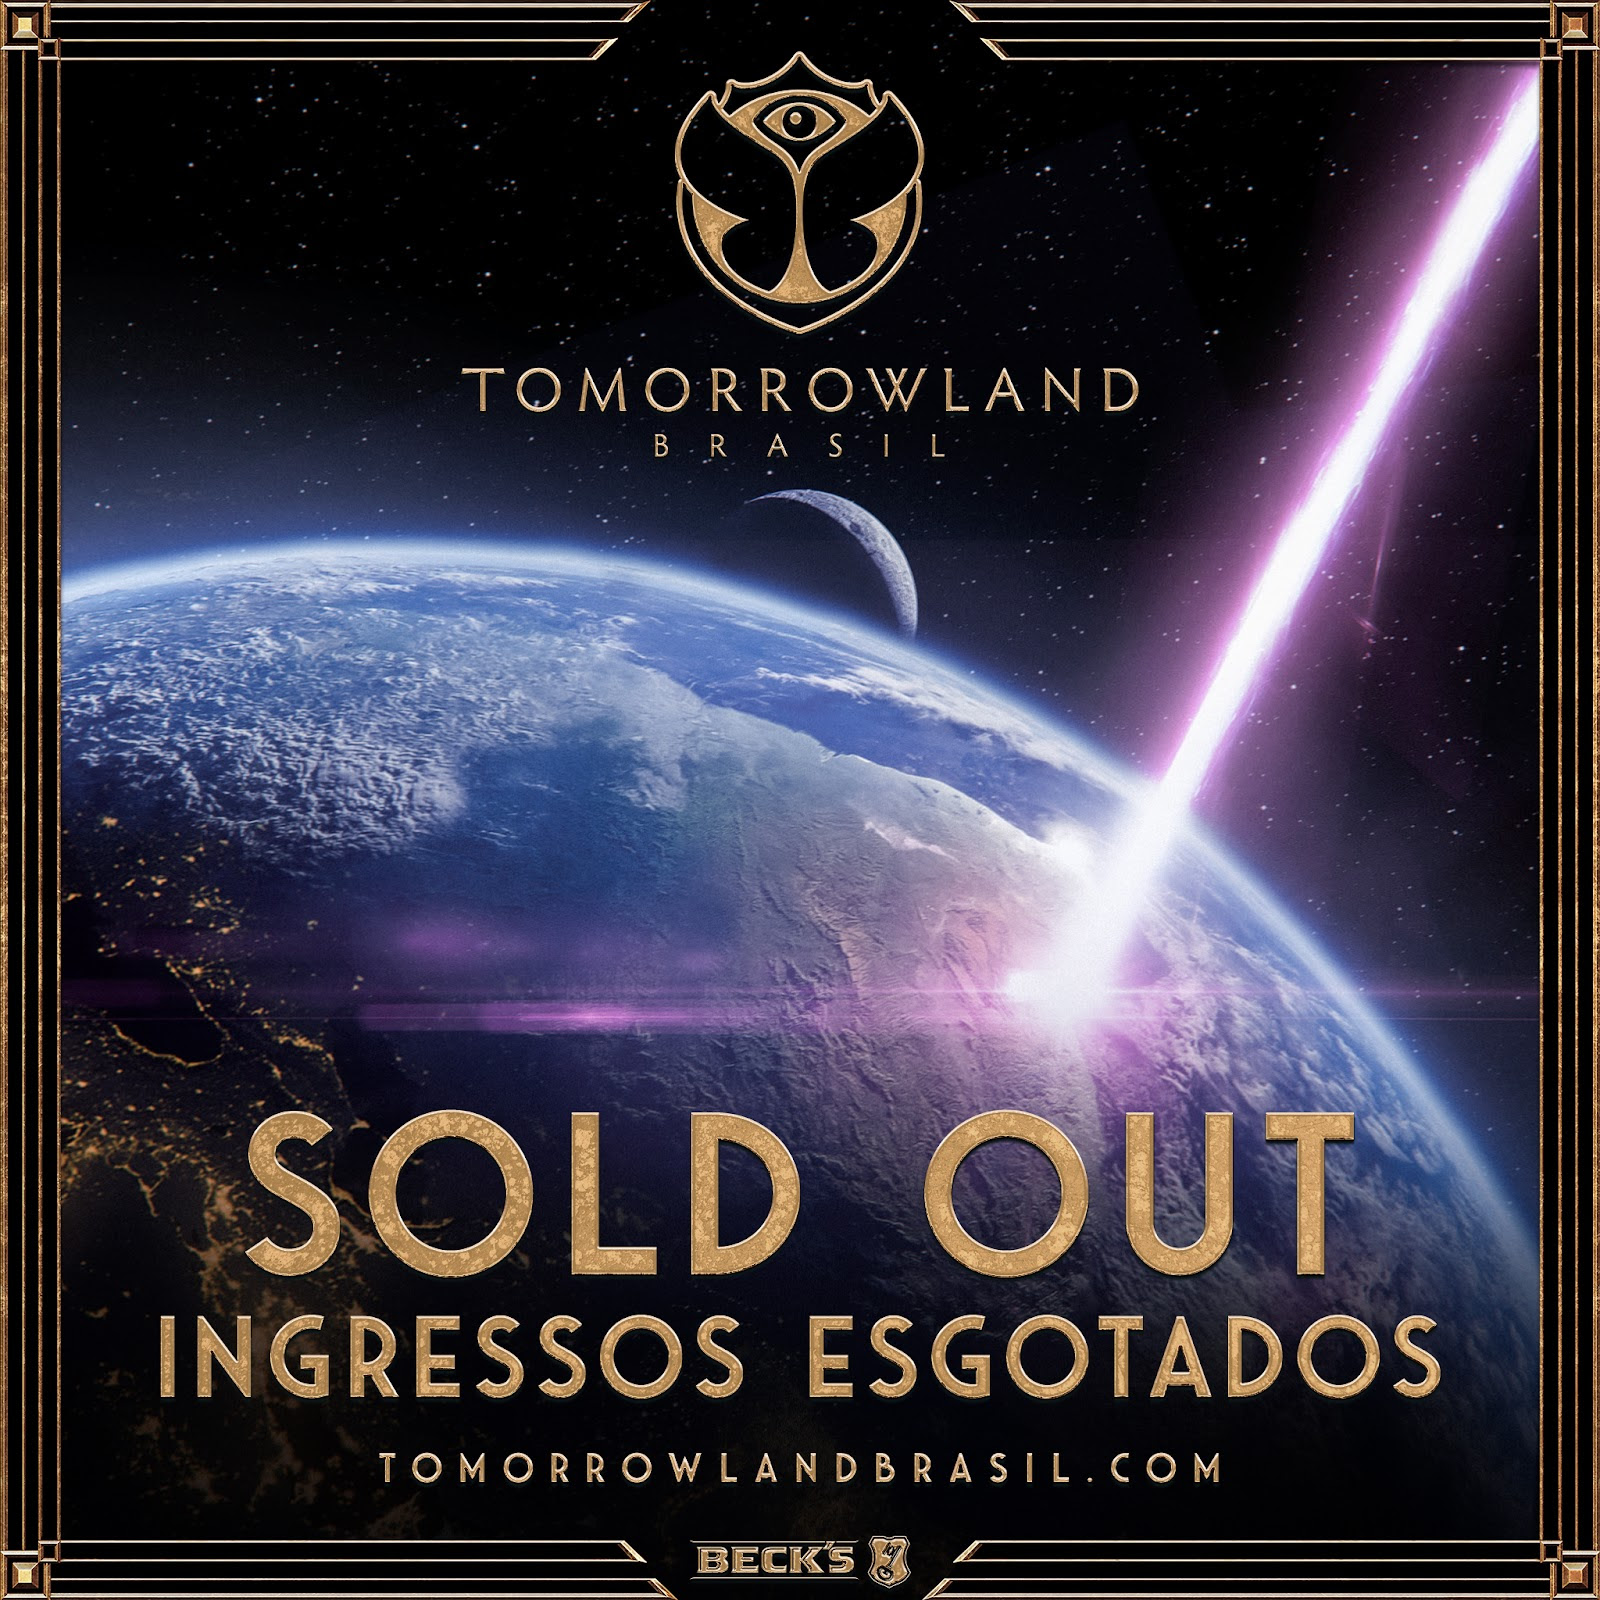 Com sold out em poucas horas, Tomorrowland Brasil 2023 promete balançar o globo